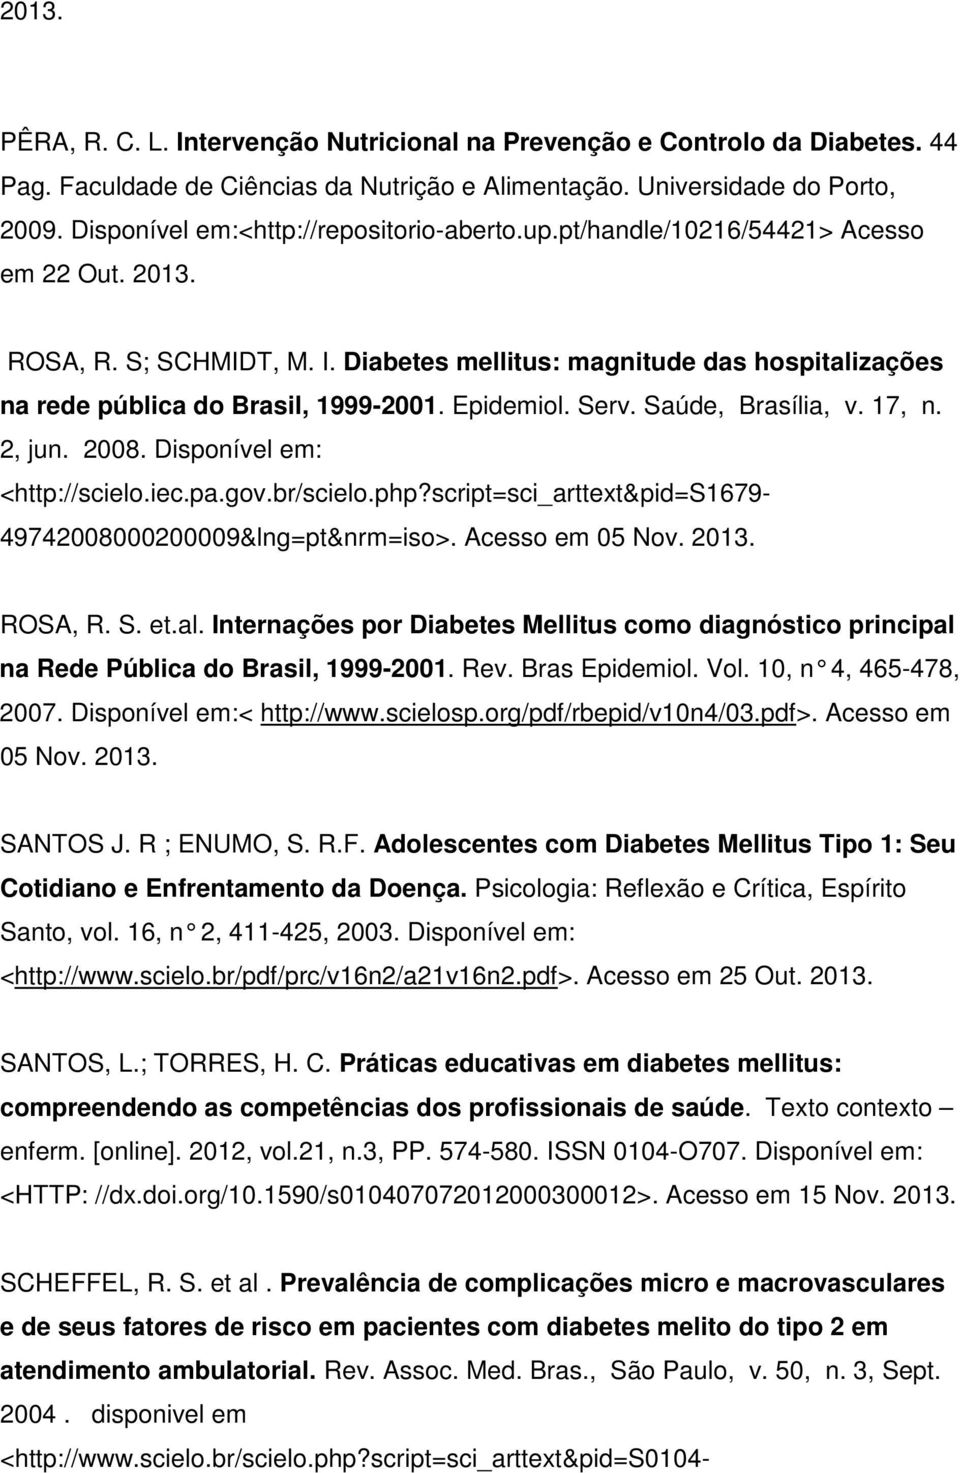 Internações por Diabetes Mellitus como diagnóstico principal na Rede Pública do Brasil, 1999-2001. Rev. Bras Epidemiol. Vol. 10, n 4, 465-478, 2007. Disponível em:< http://www.scielosp.